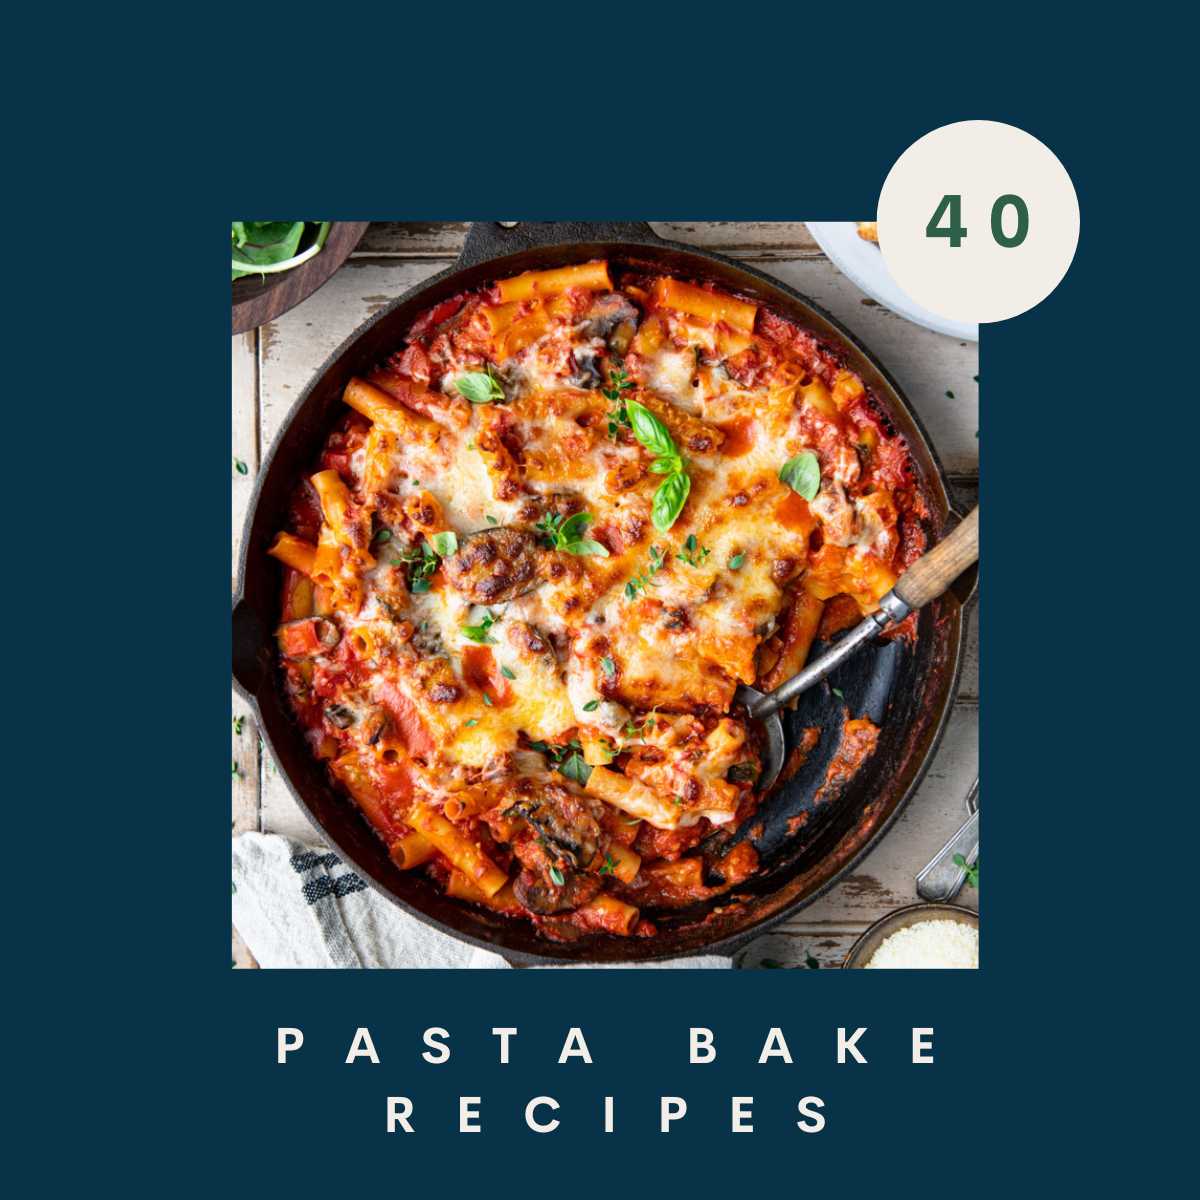 40 Pasta Bake Recipes - The Seasoned Mom